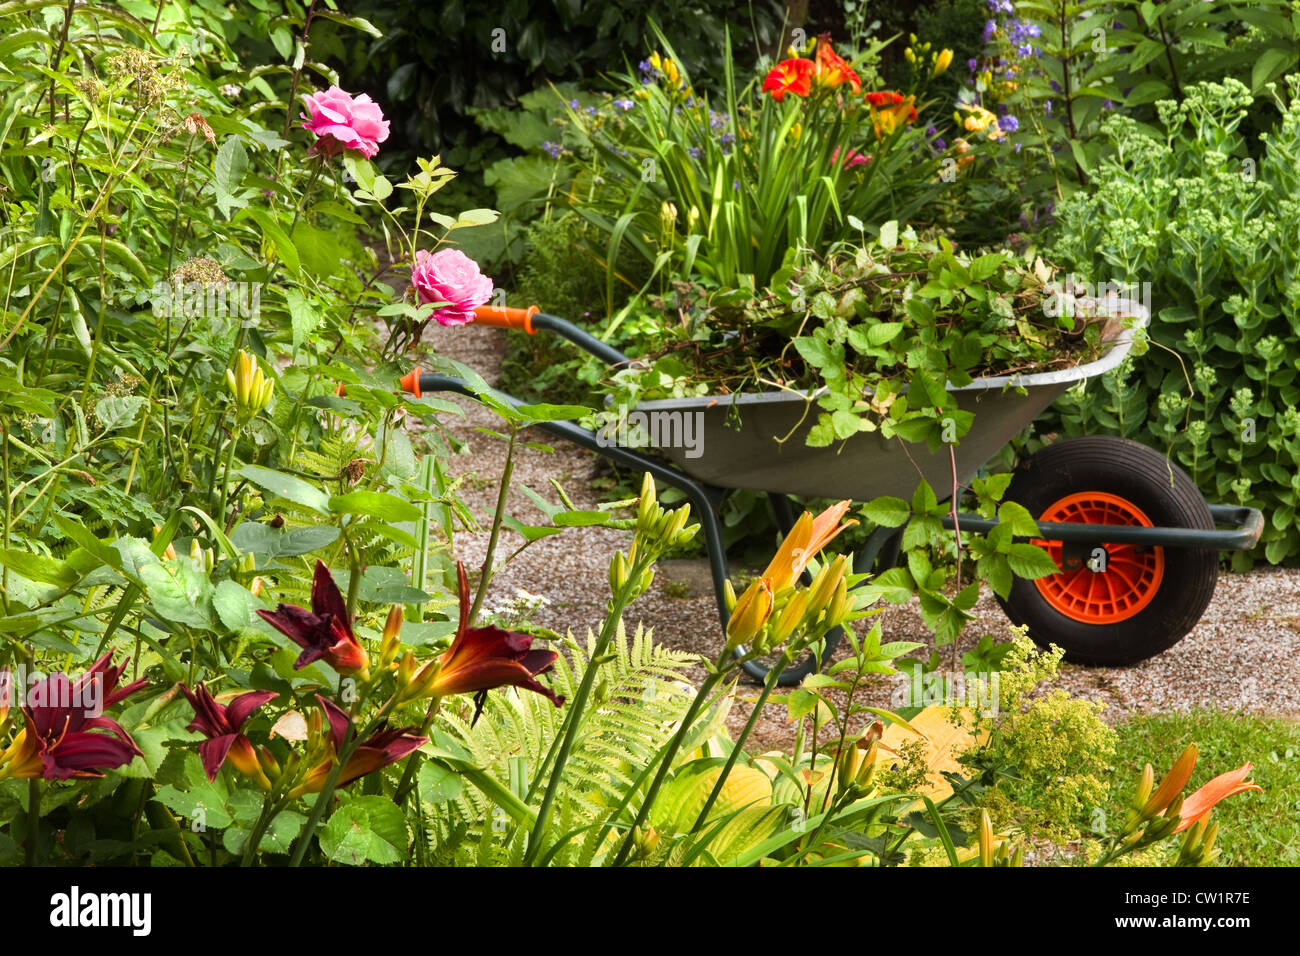 Le nettoyage de l'été jardin plein de fleurs et de brouette avec jardin-déchets, les plantes et les mauvaises herbes - horizontal Banque D'Images